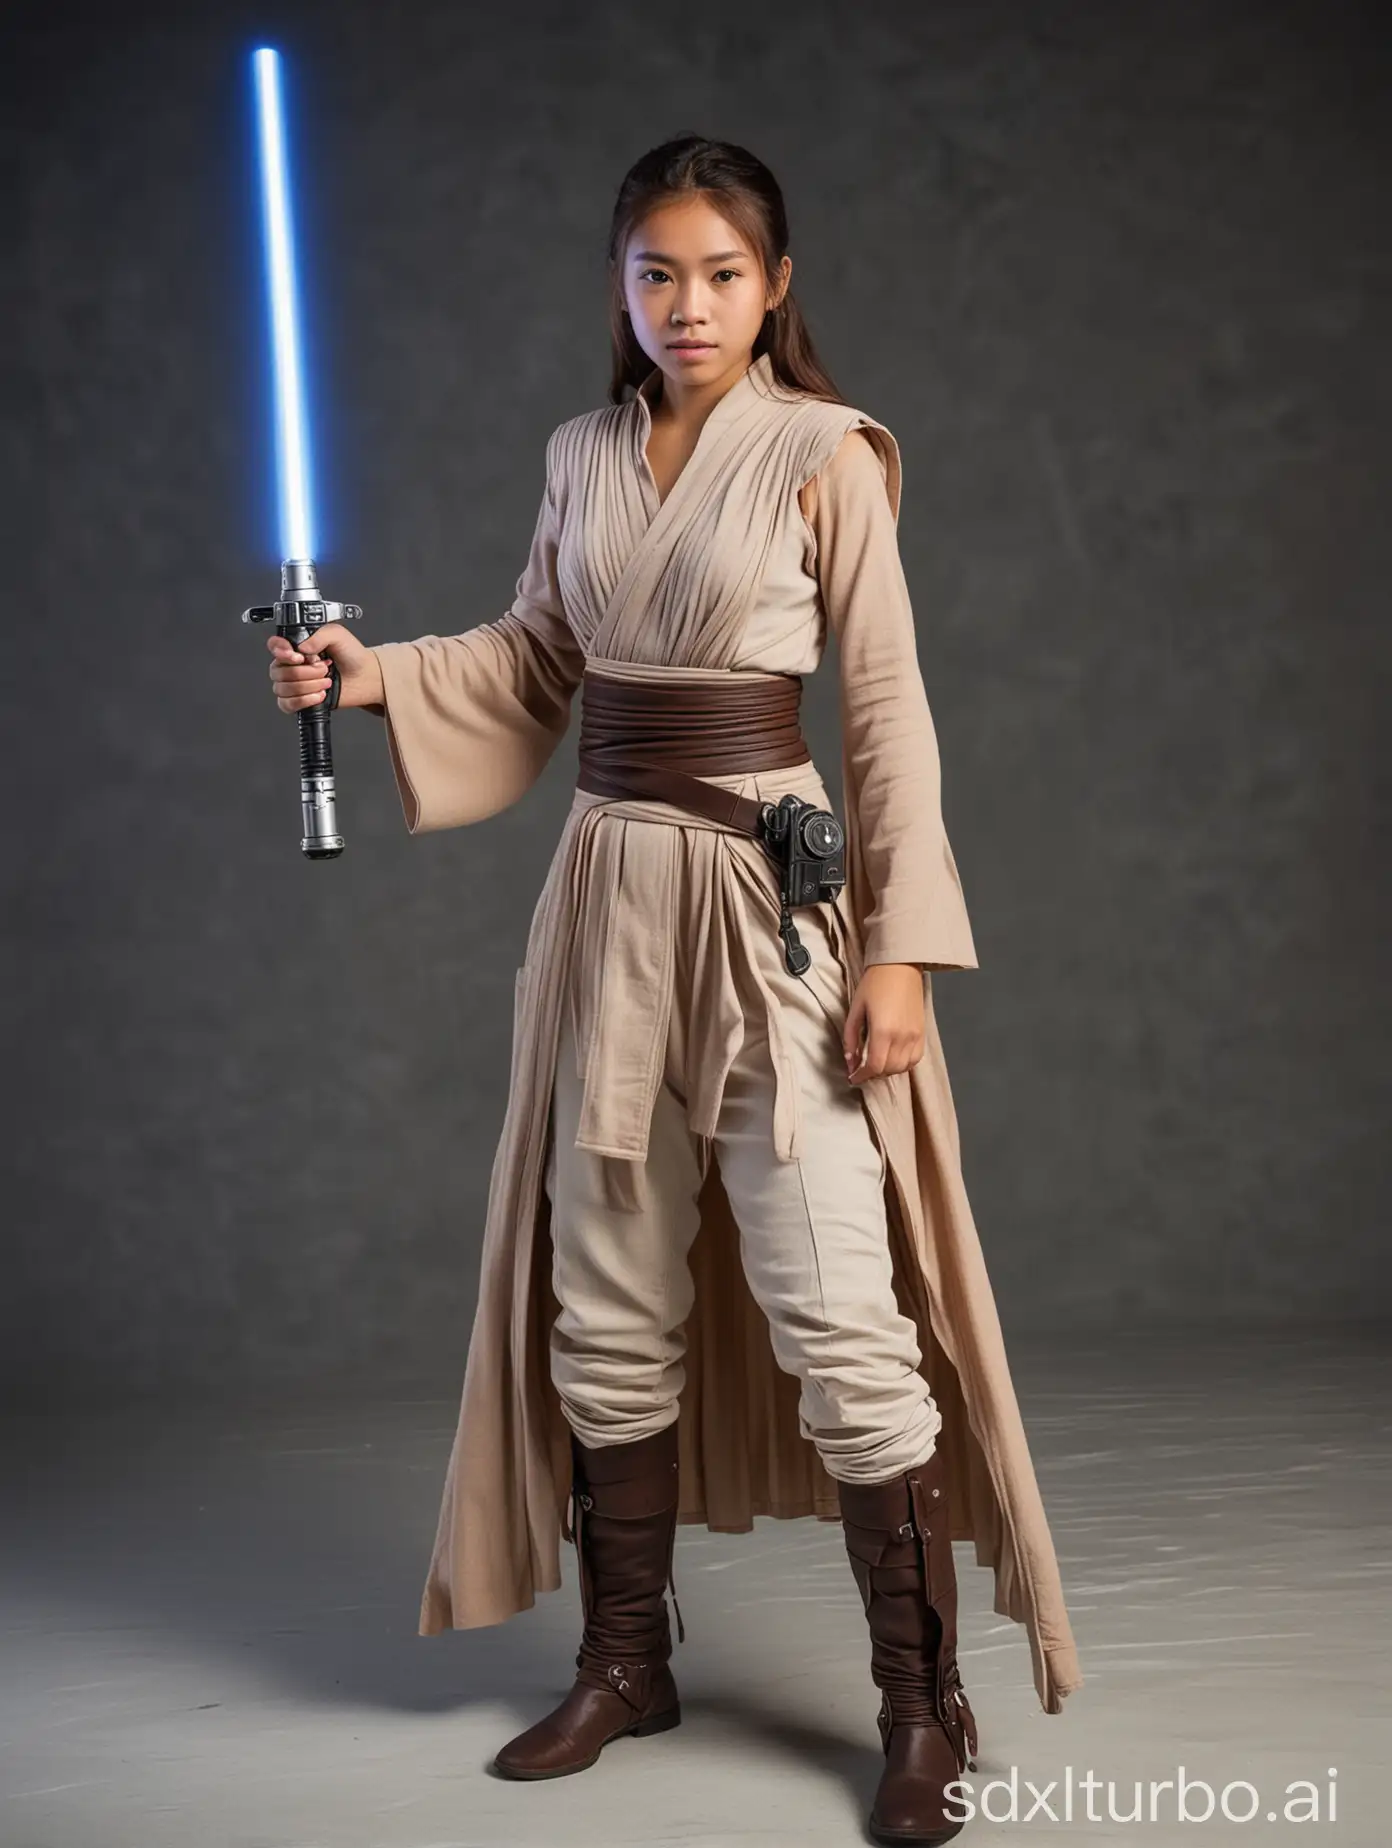 Southeast-Asian-Jedi-Girl-Age-16-Wielding-Lightsaber-in-Landing-Bay